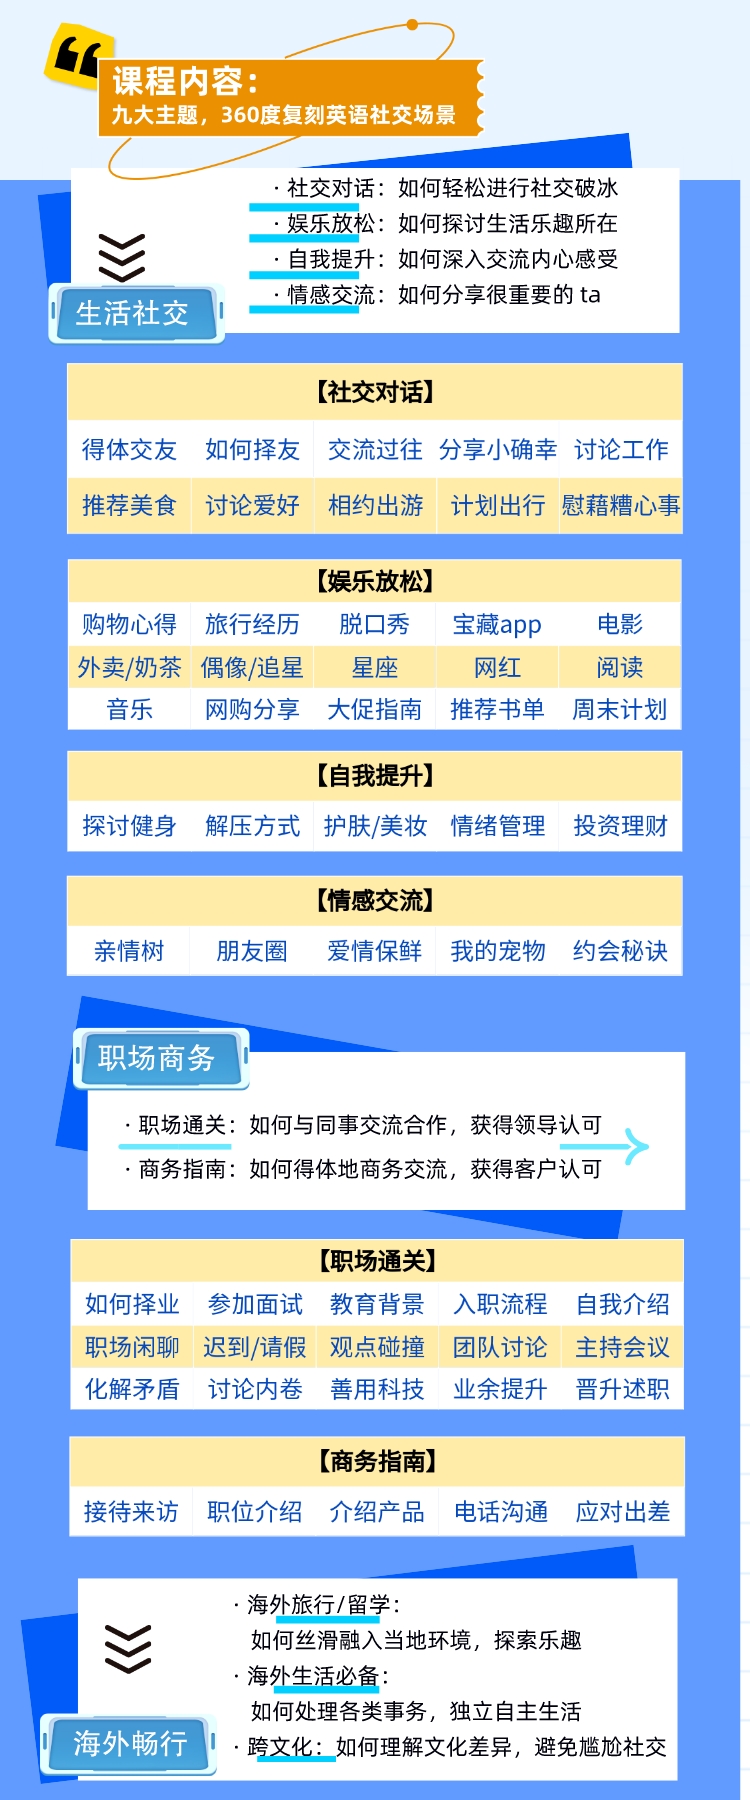 https://simg01.gaodunwangxiao.com/uploadfiles/product-center/202304/20/d3580_20230420103402.jpeg